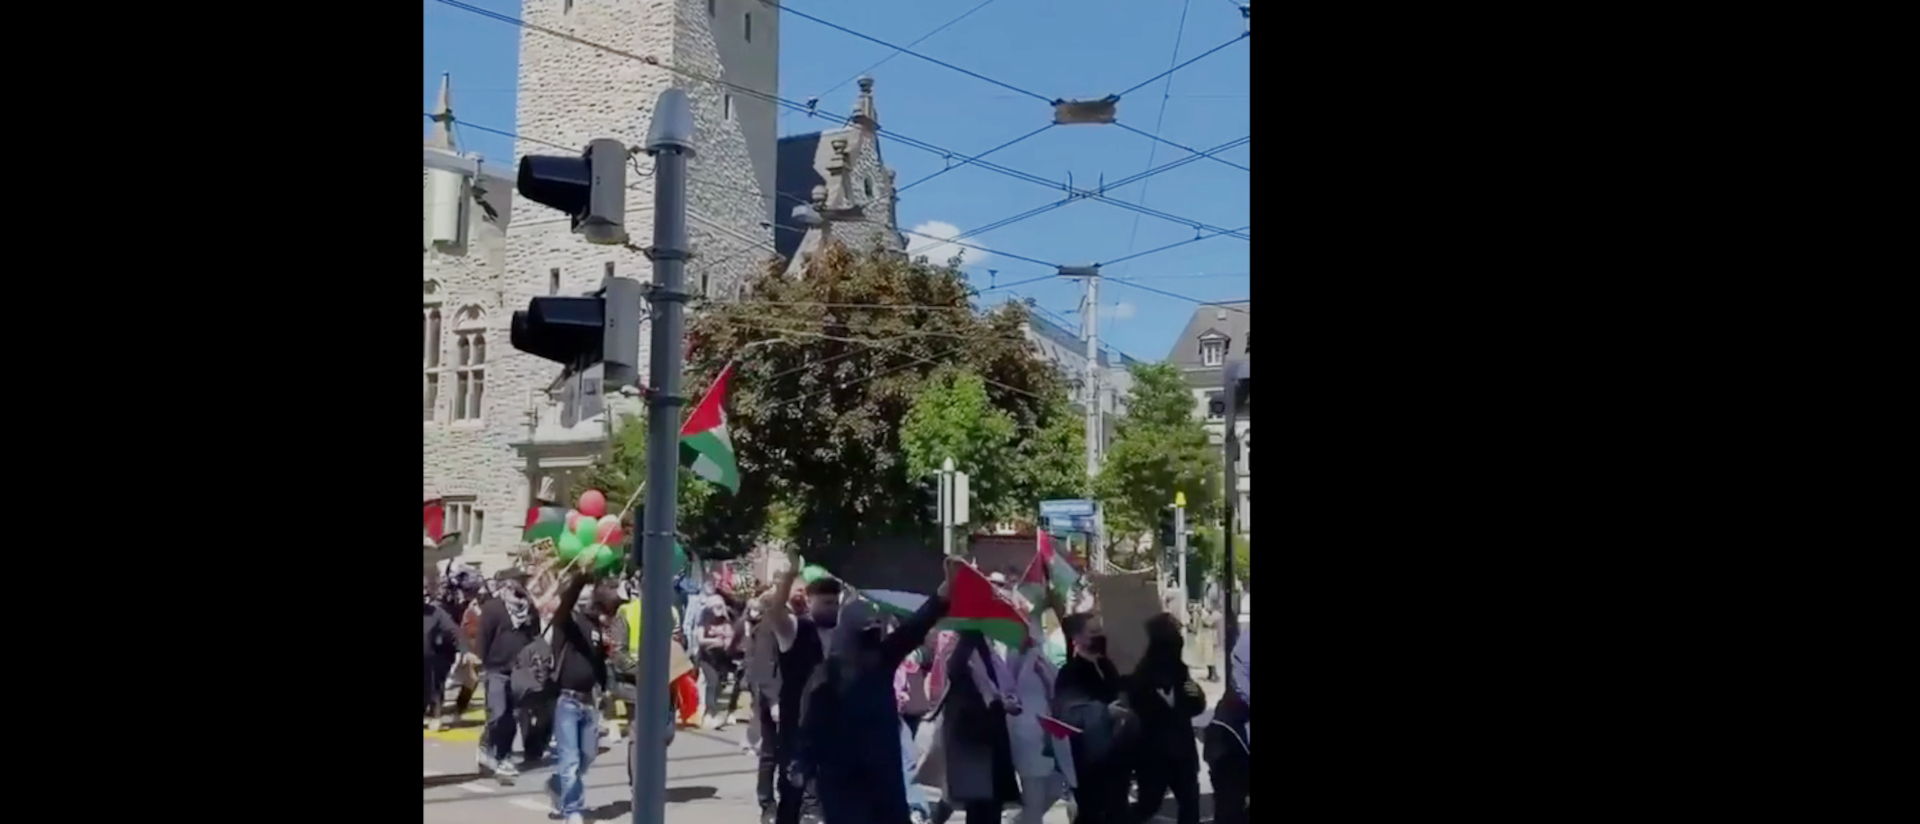 Ein Video zeigt eine angebliche Hamas-Demonstration durch die Zürcher Innenstadt.